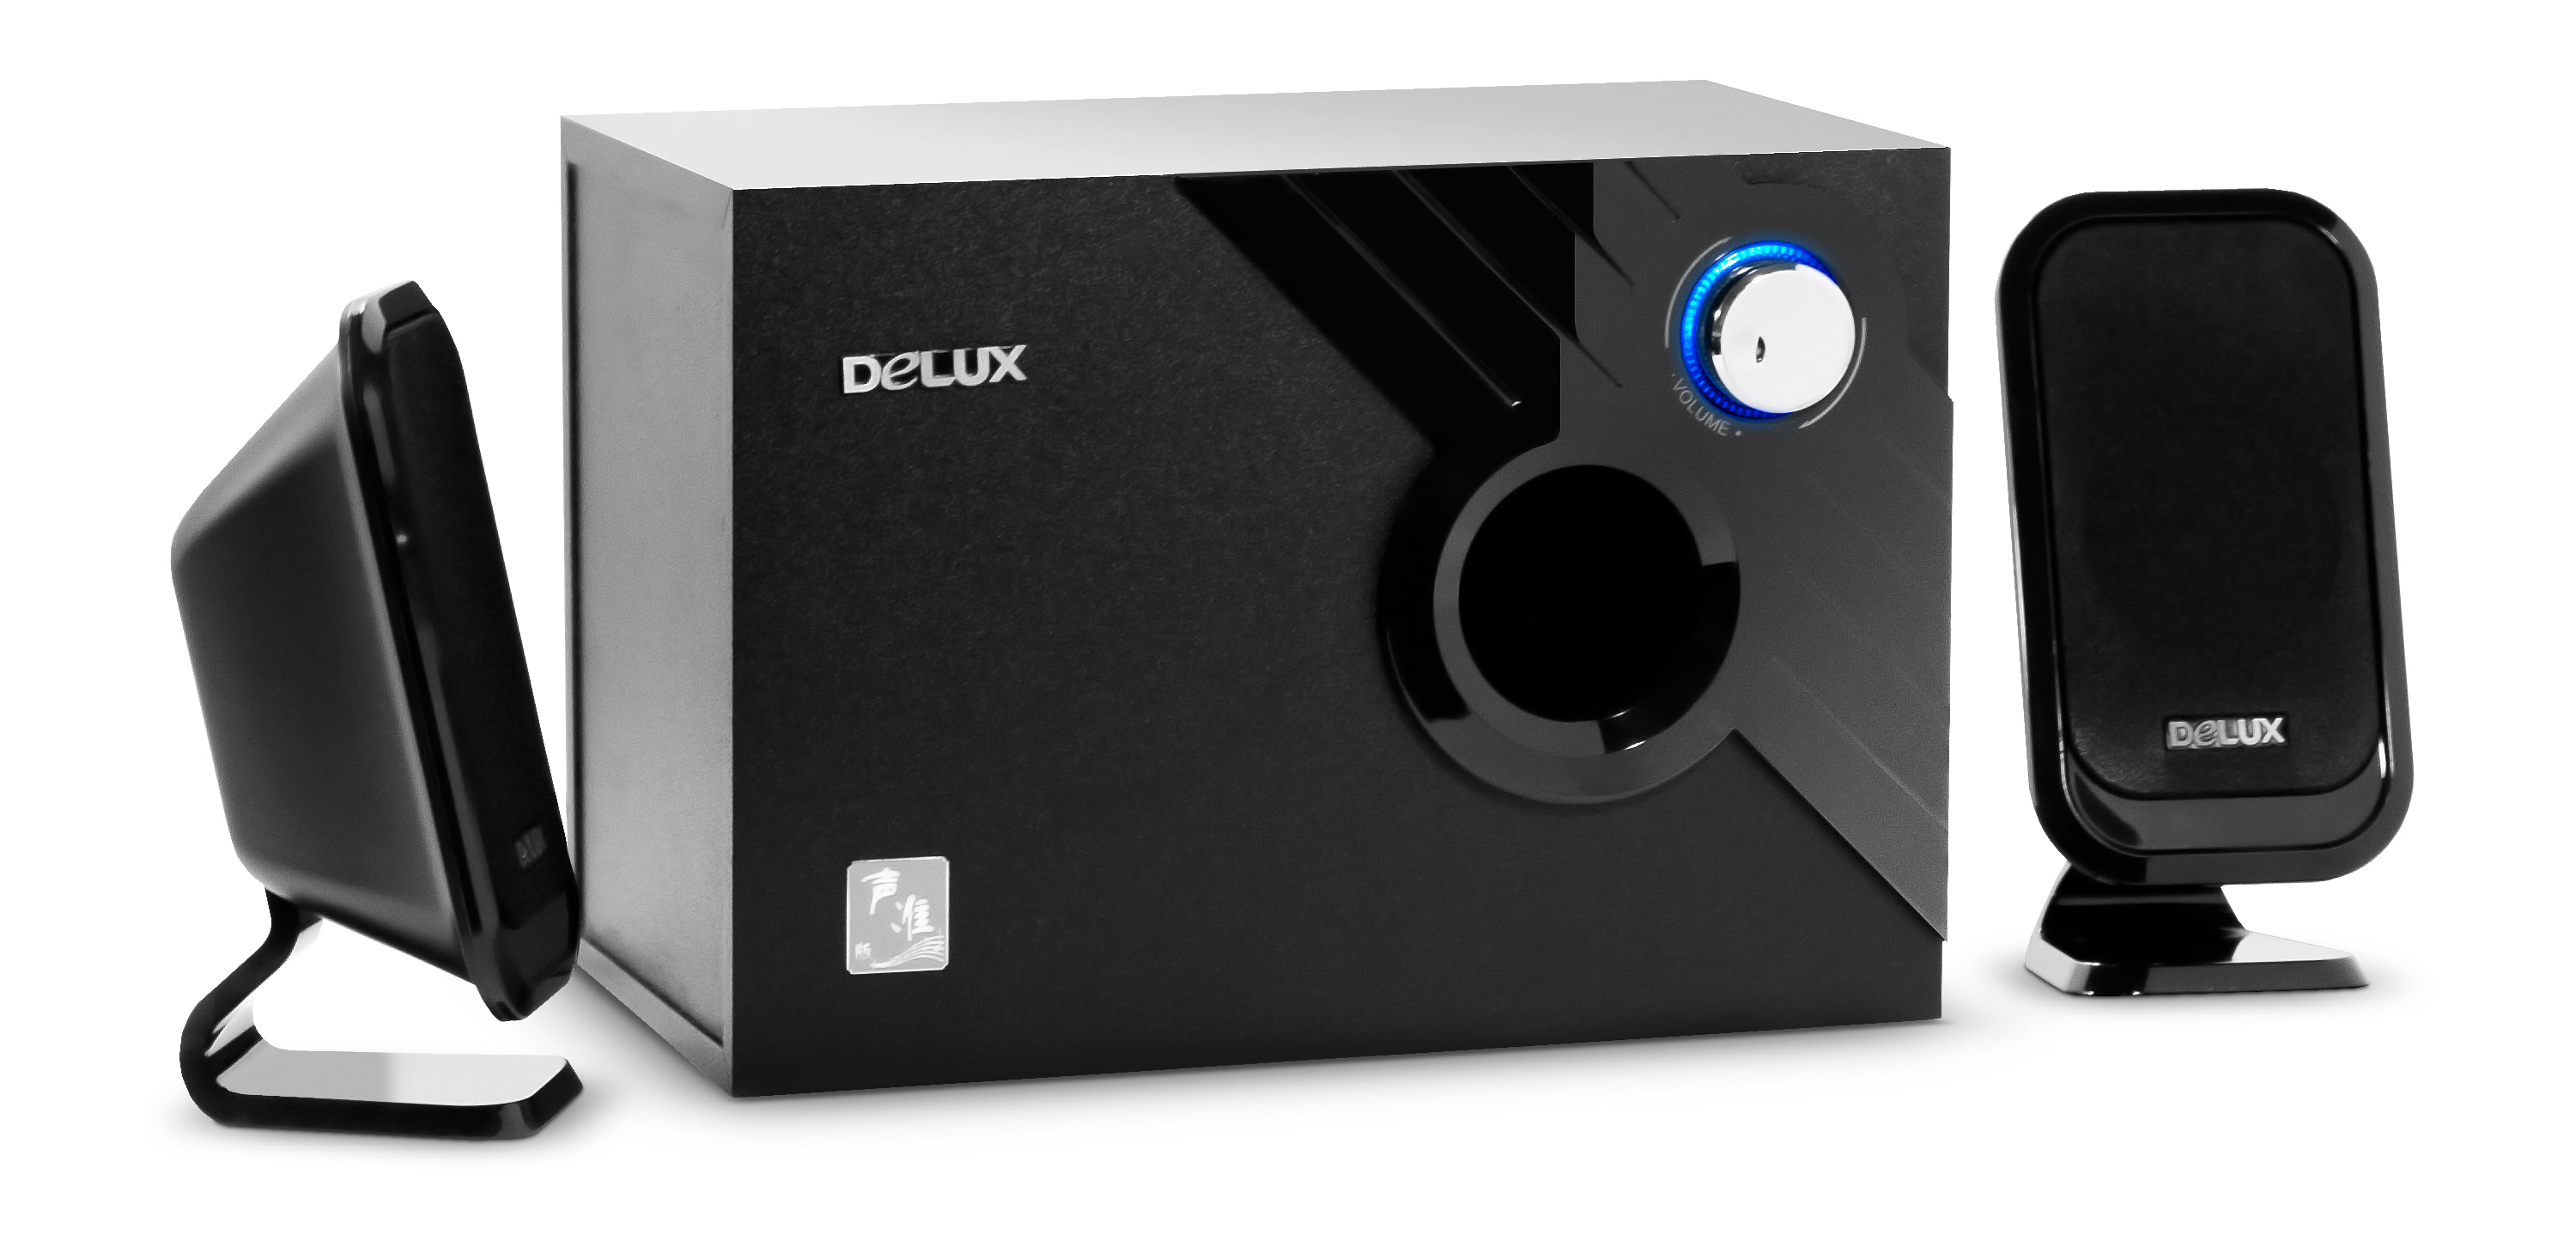 Loa Delux DLS-X506 (DLSX506)